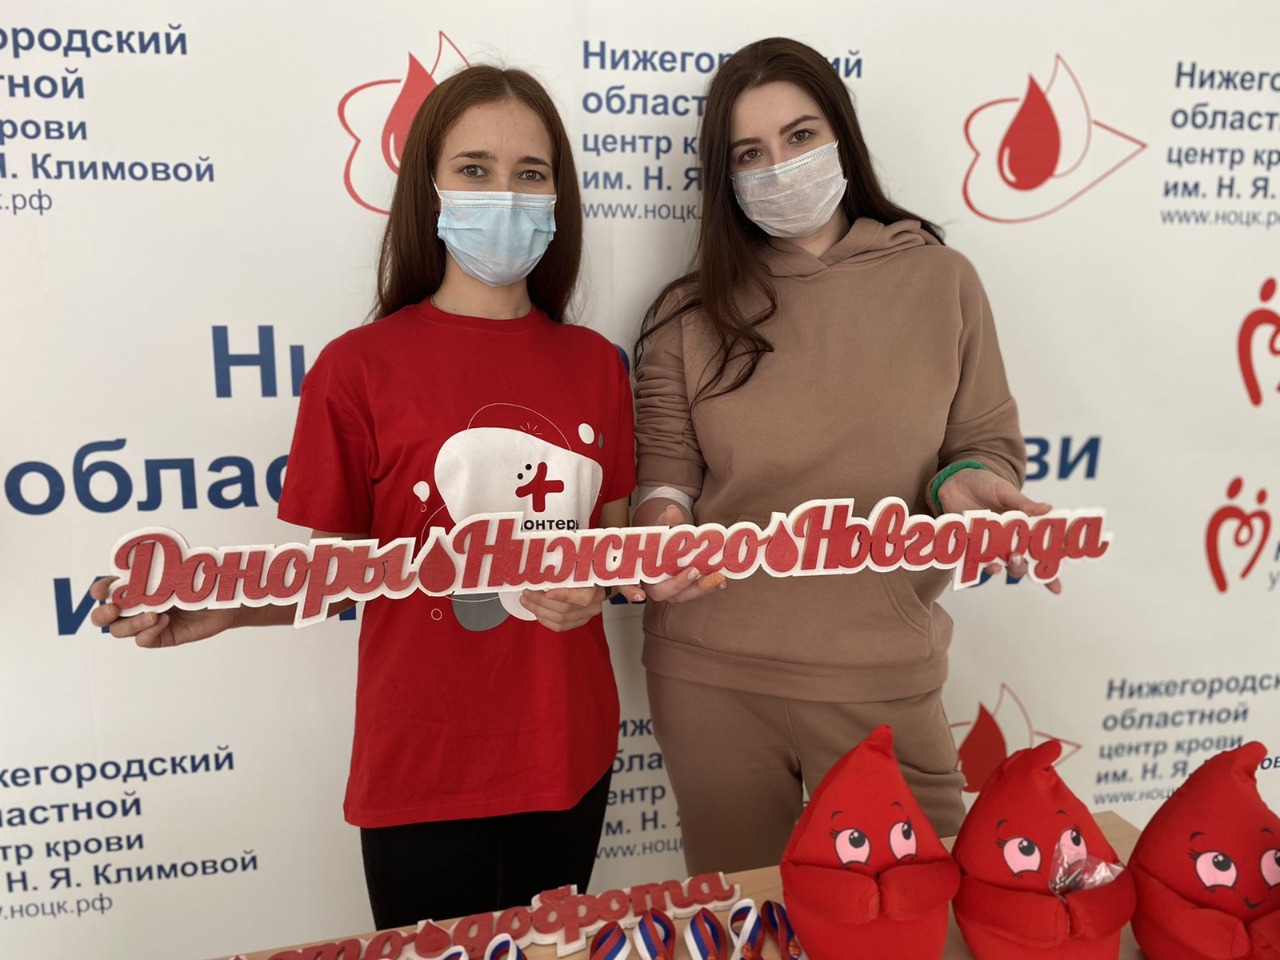 13 марта Нижегородская Служба крови отмечает 90-летний юбилей